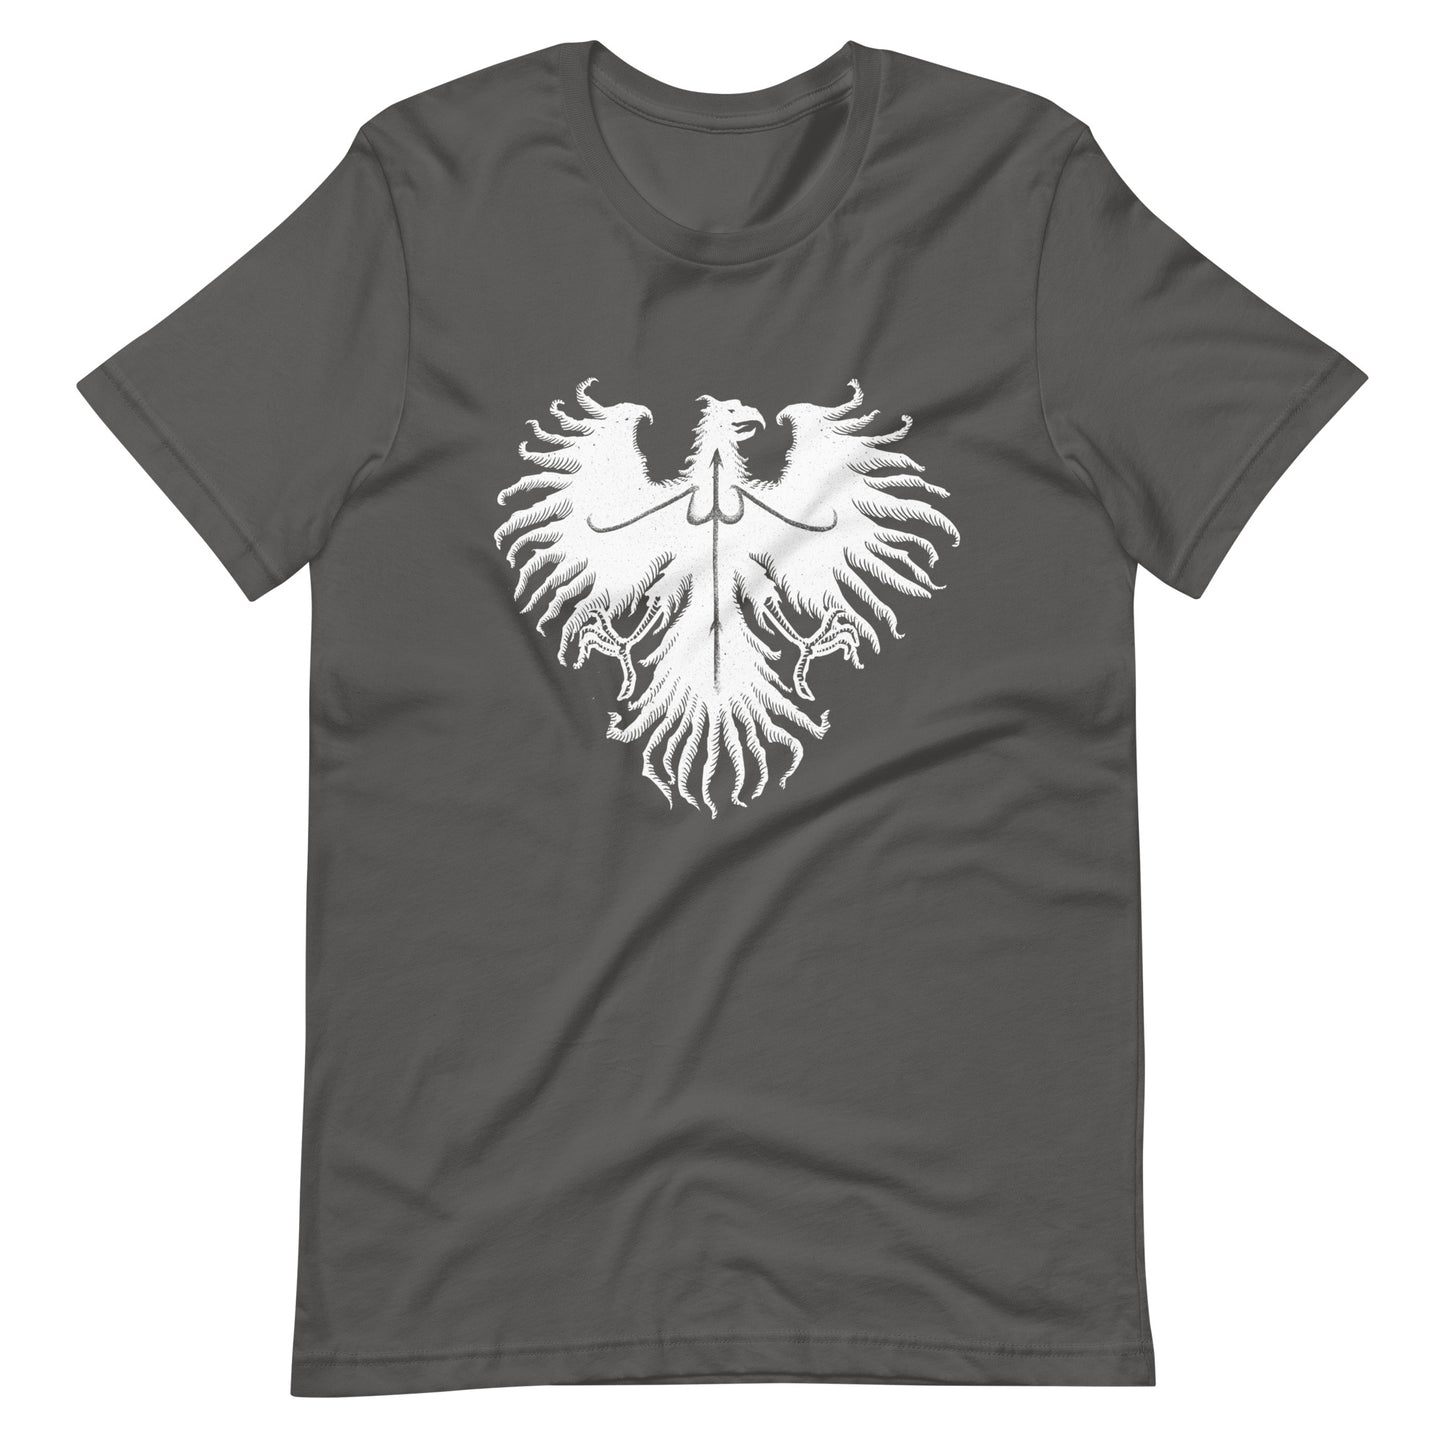 Black Eagle - Men's t-shirt - Asphalt Front